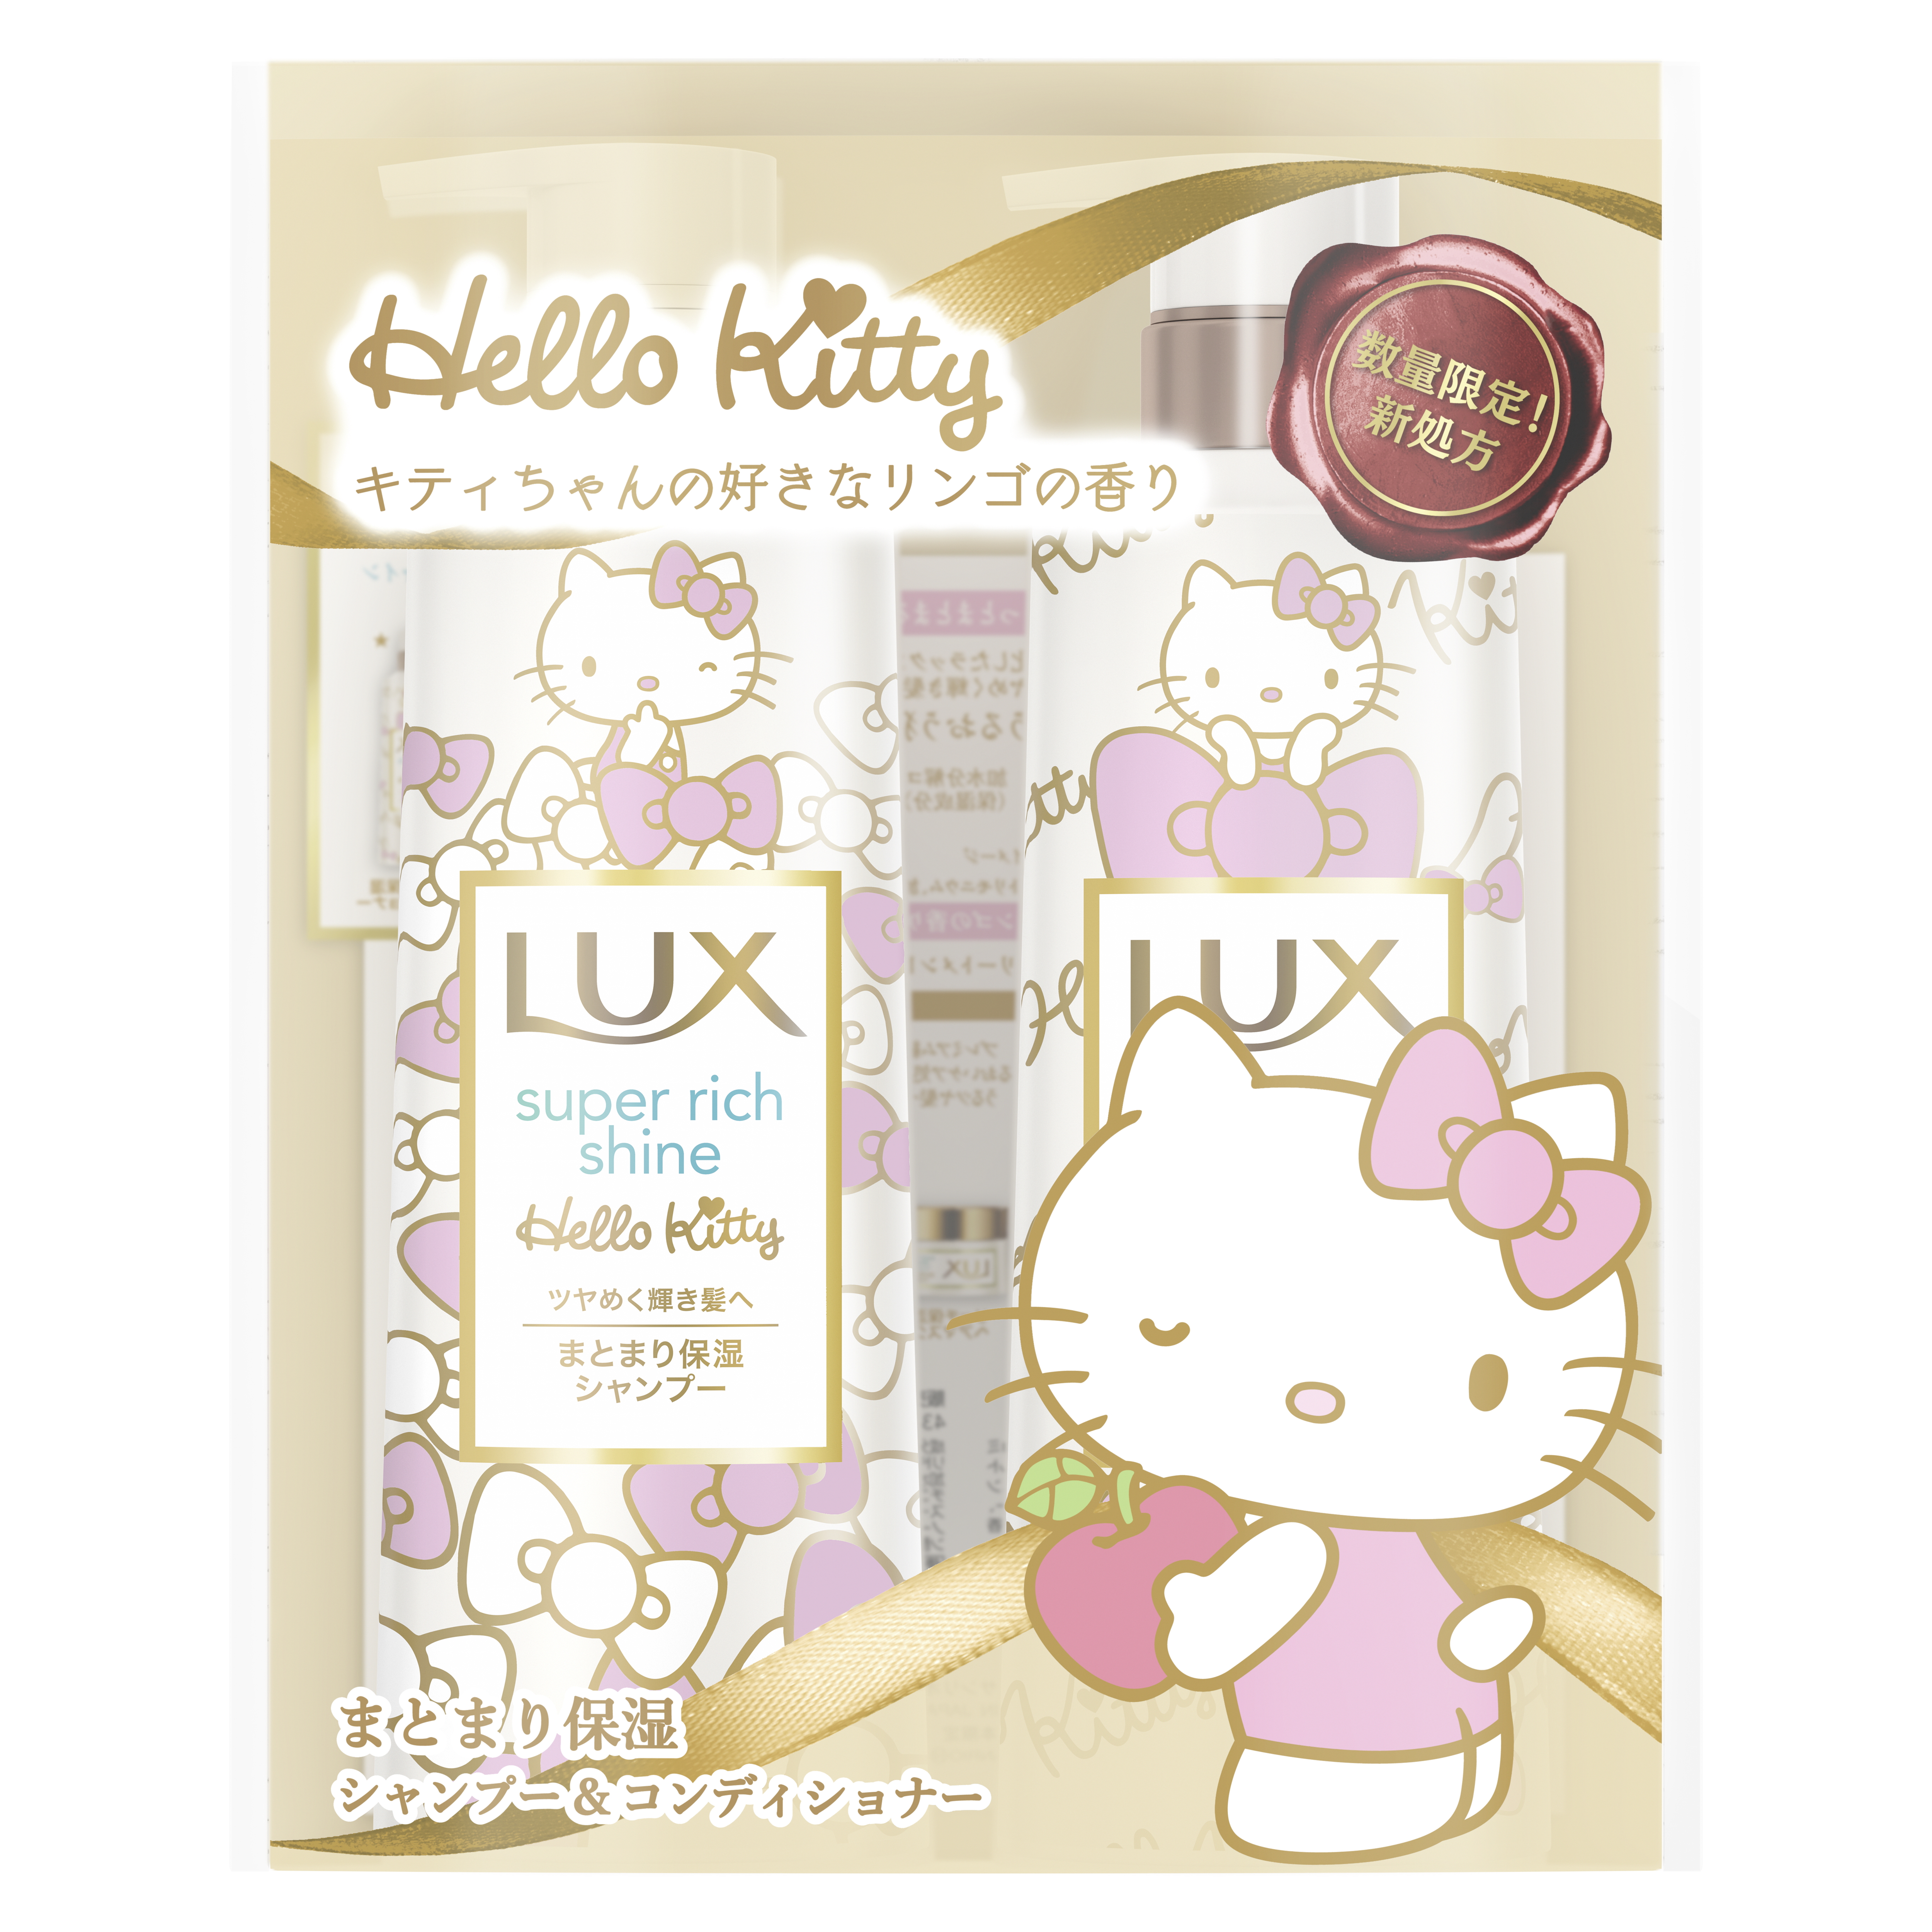 キティちゃんが好きなリンゴの香りがするシャンプー Lux